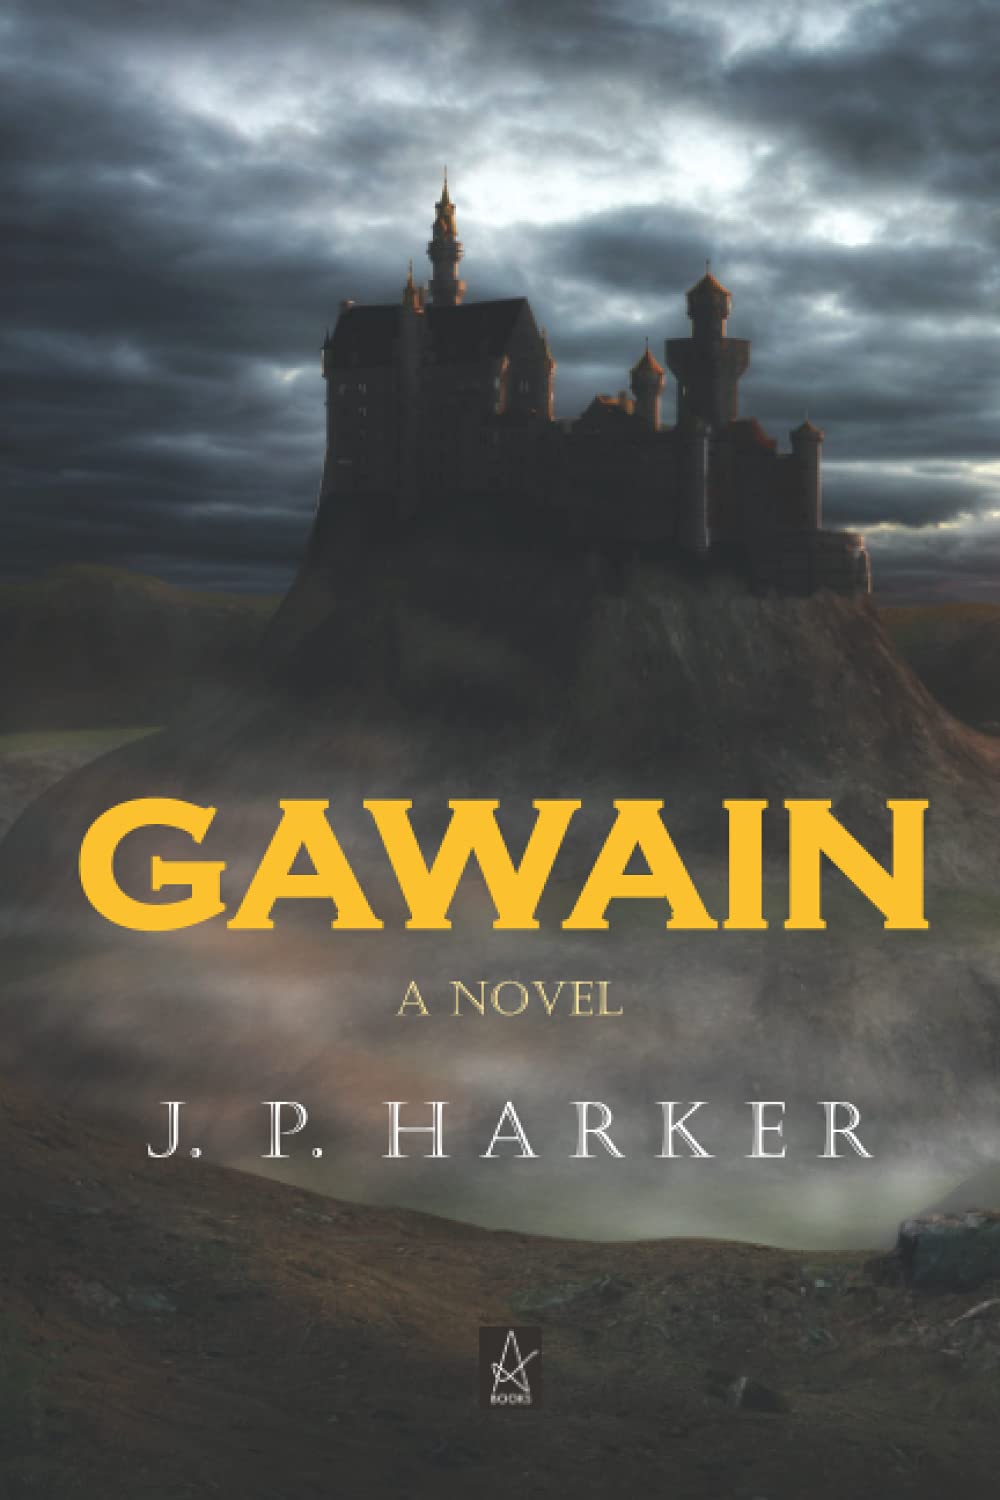 Gawain is Here!